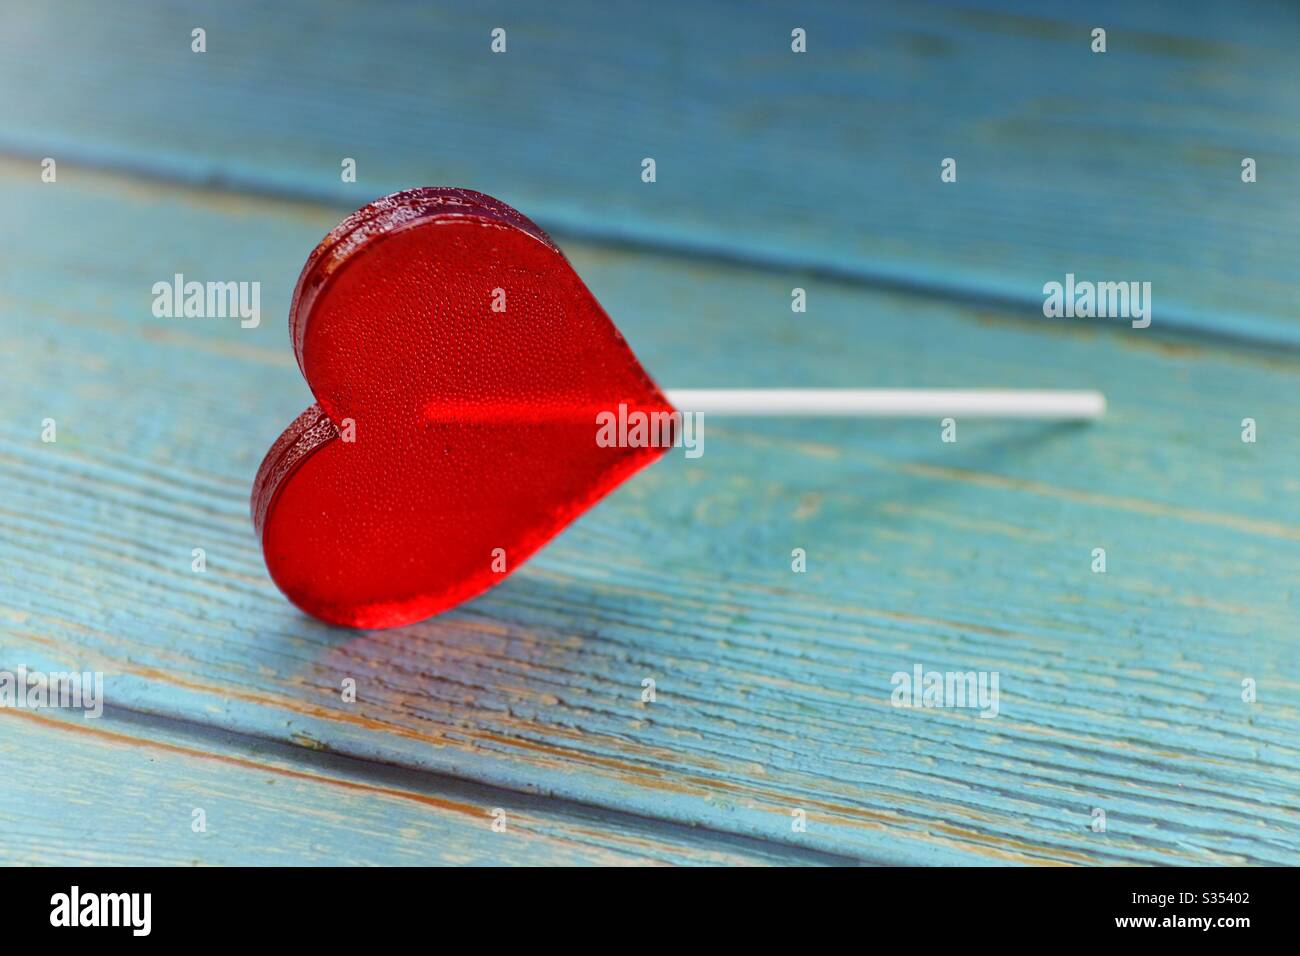 Rouge coeur lollipop sur table en bois bleu Banque D'Images